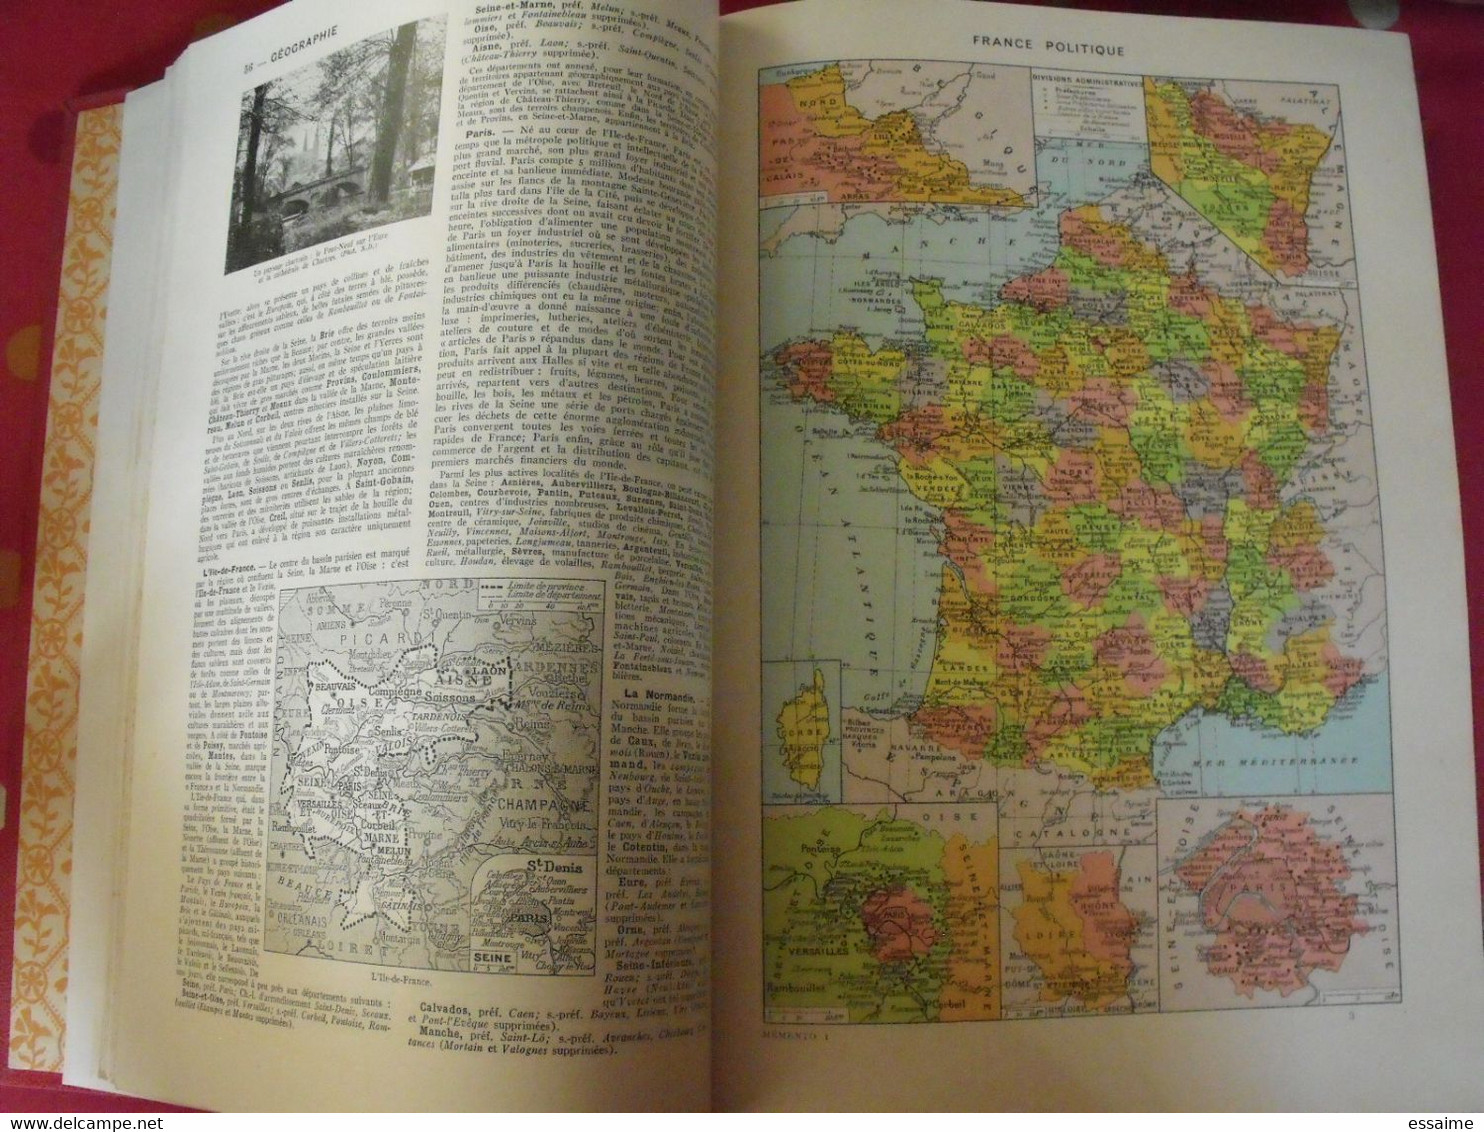 grand memento Larousse (en 2 tomes). 1936. geographie histoire beaux-arts physique chimie zoologie sports botanique